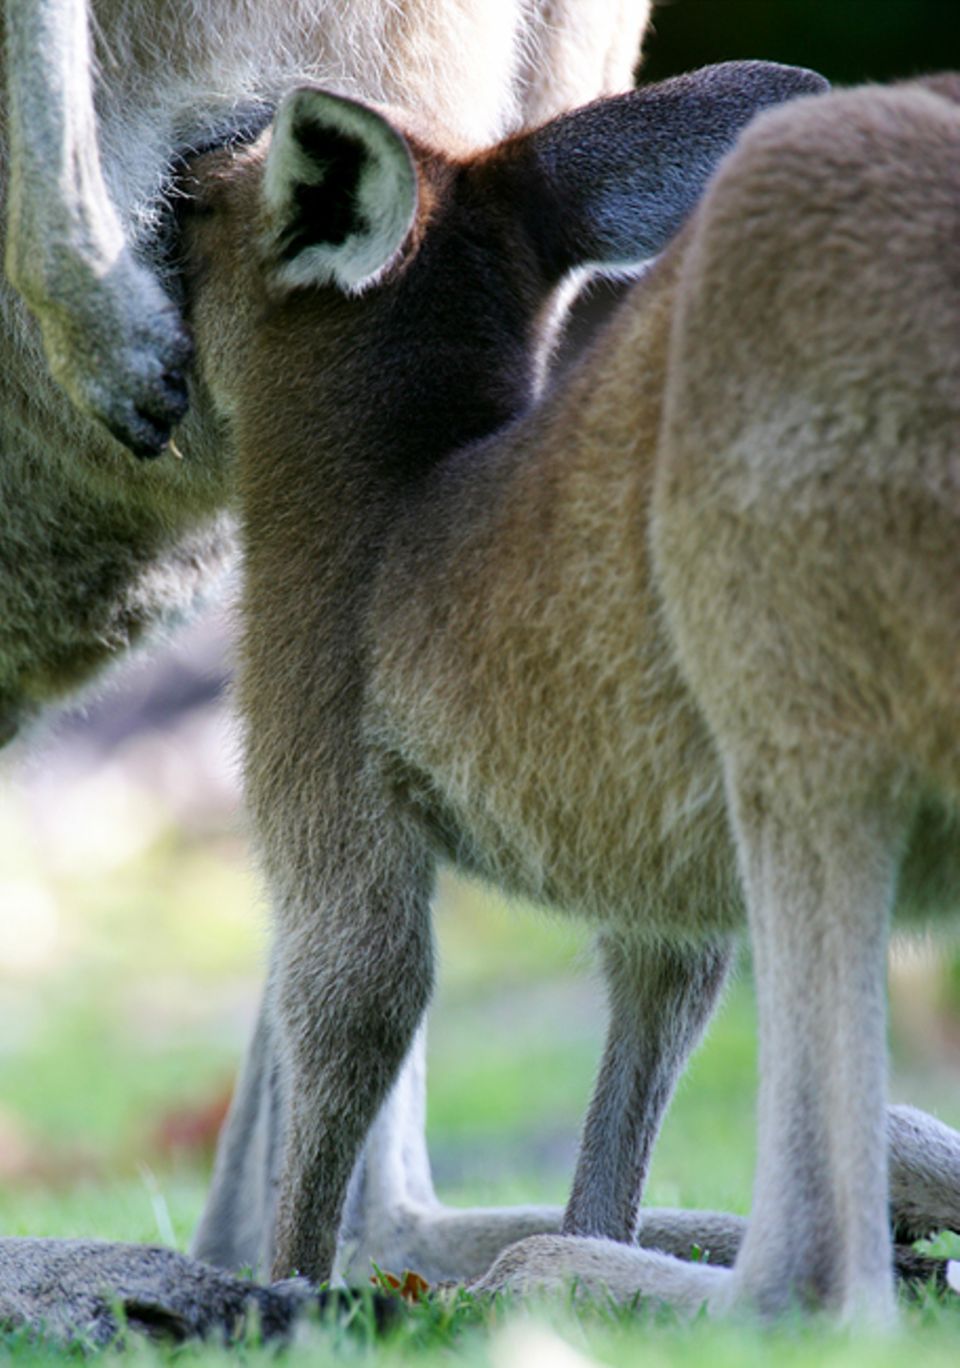 Tiere: Wenn die Känguru-Kinder älter werden, passen sie bald nicht mehr in den Beutel ihrer Mutter